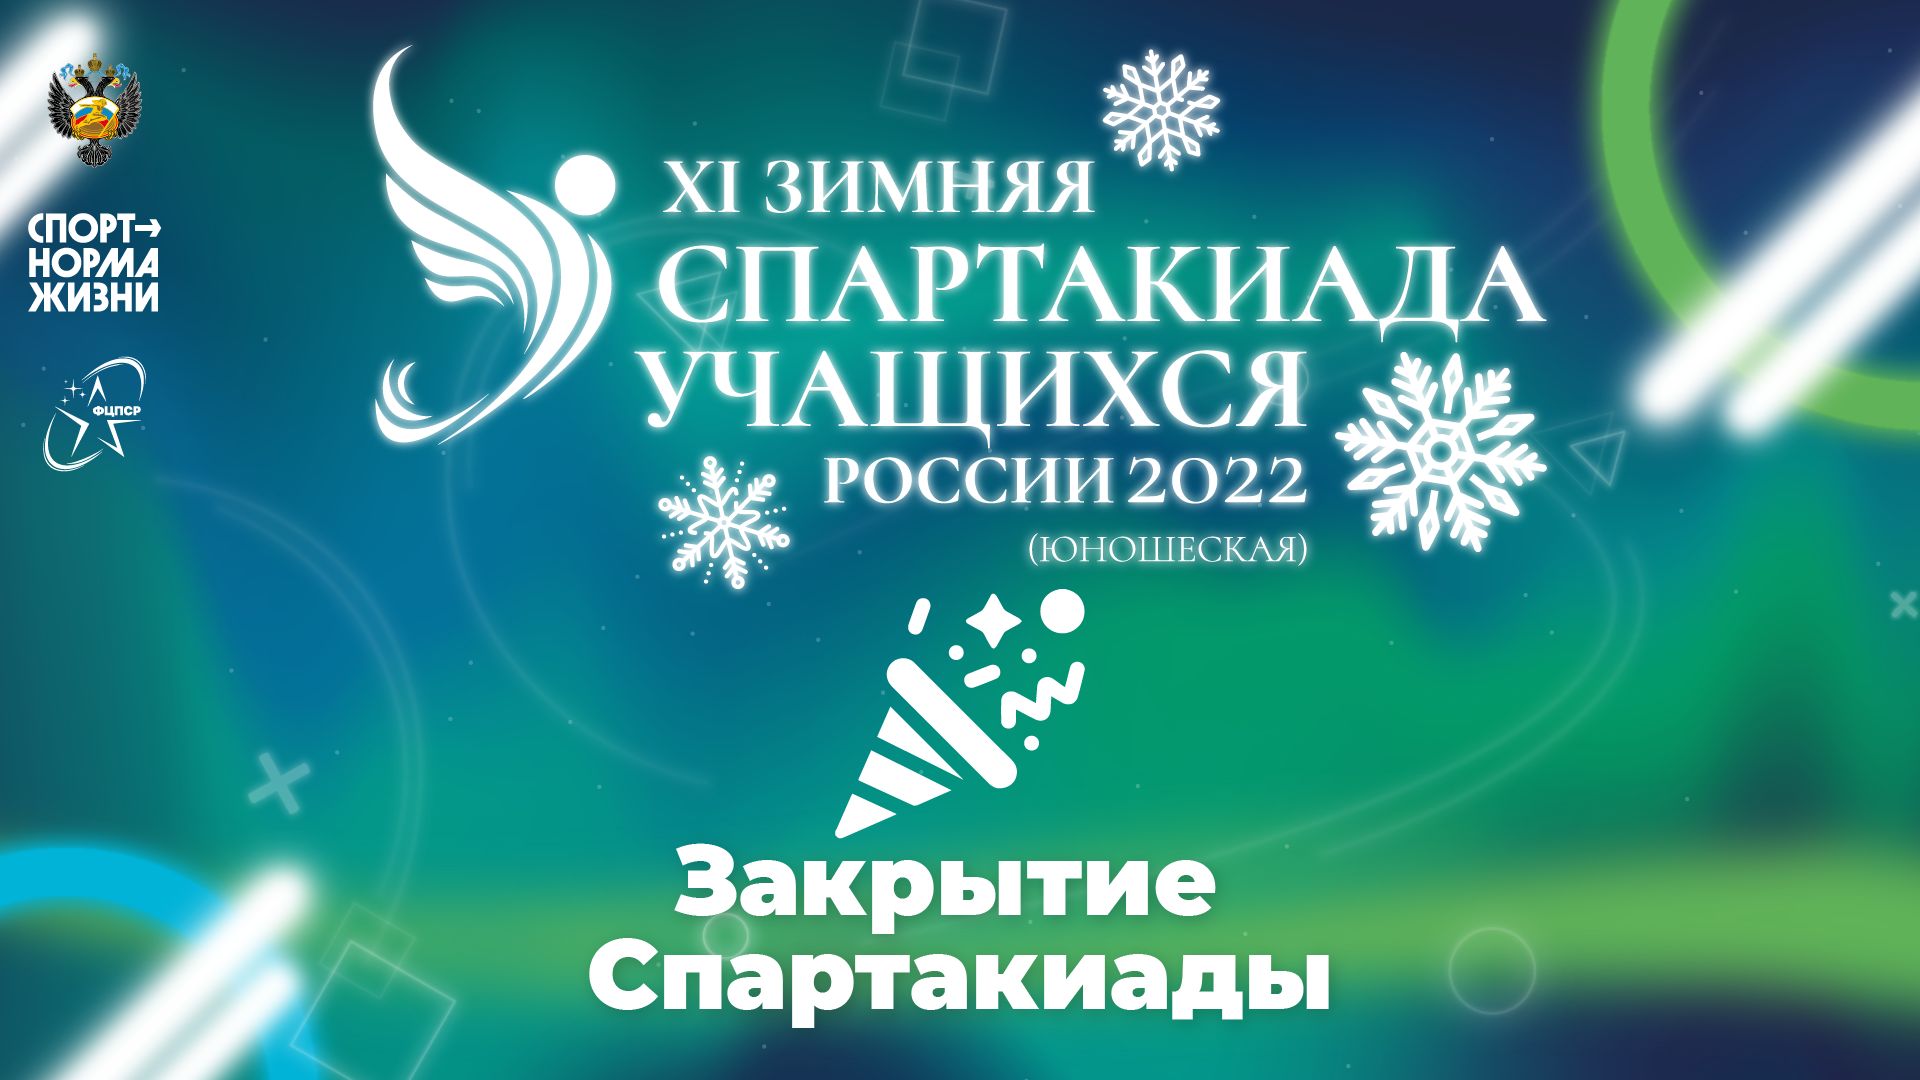 XI зимняя Спартакиада учащихся России 2022 года. Закрытие Спартакиады